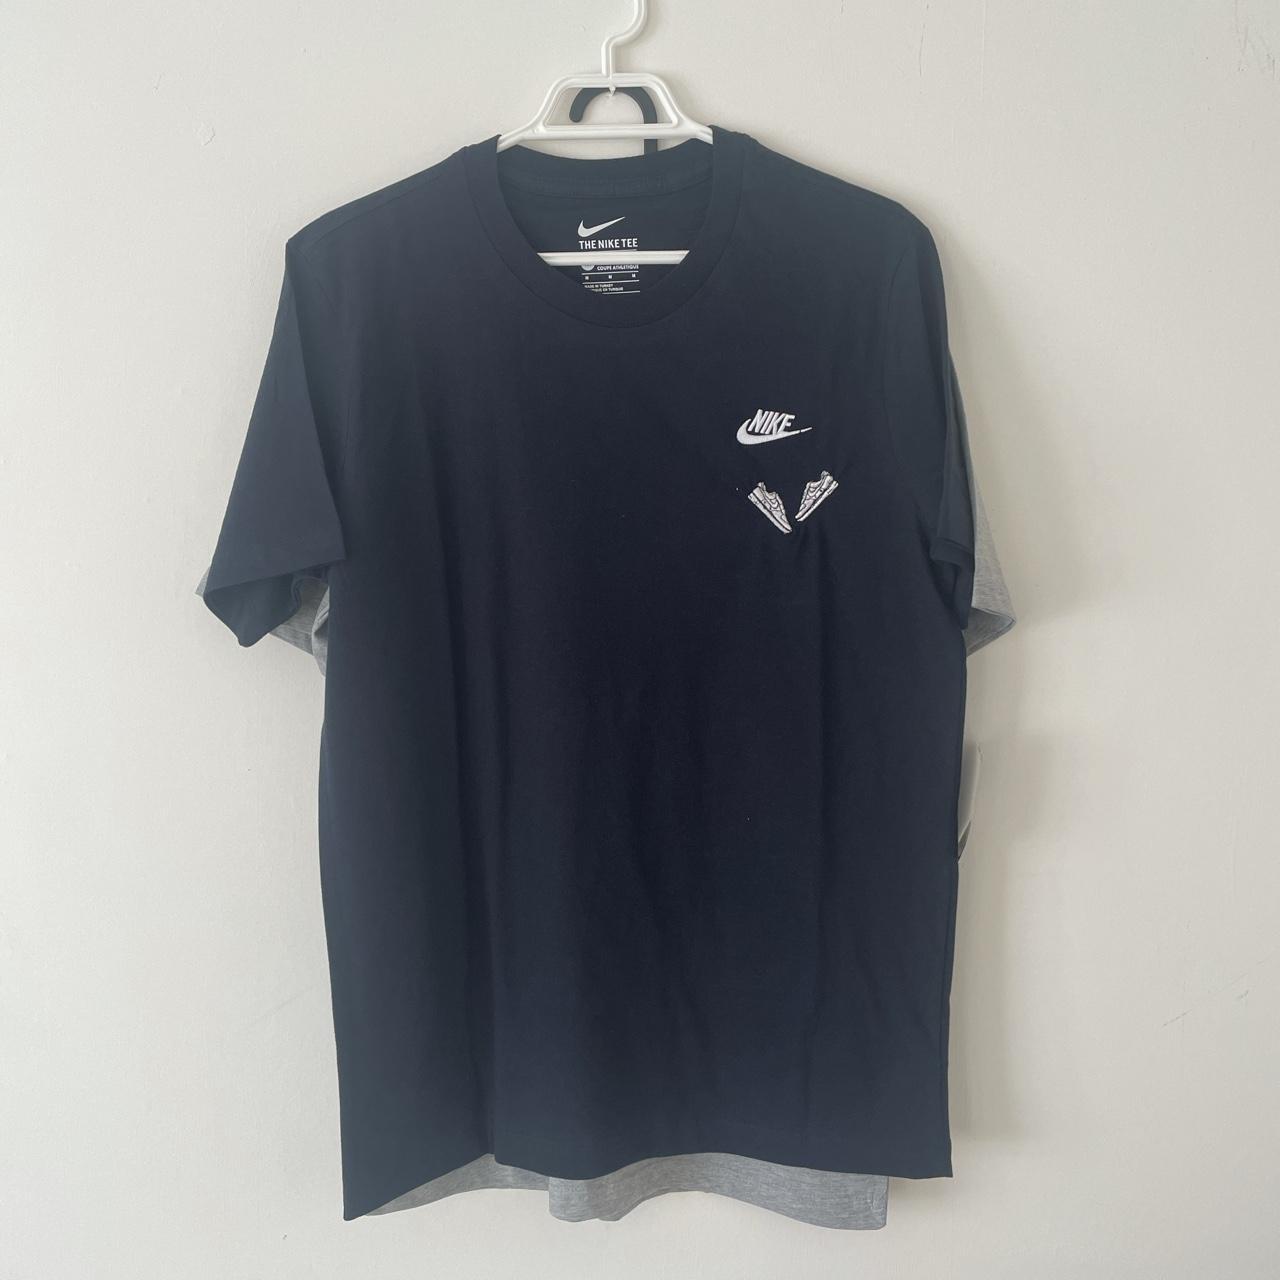 Air Force 1 OG Embroidered Black Nike T - Shirt BNWT... - Depop